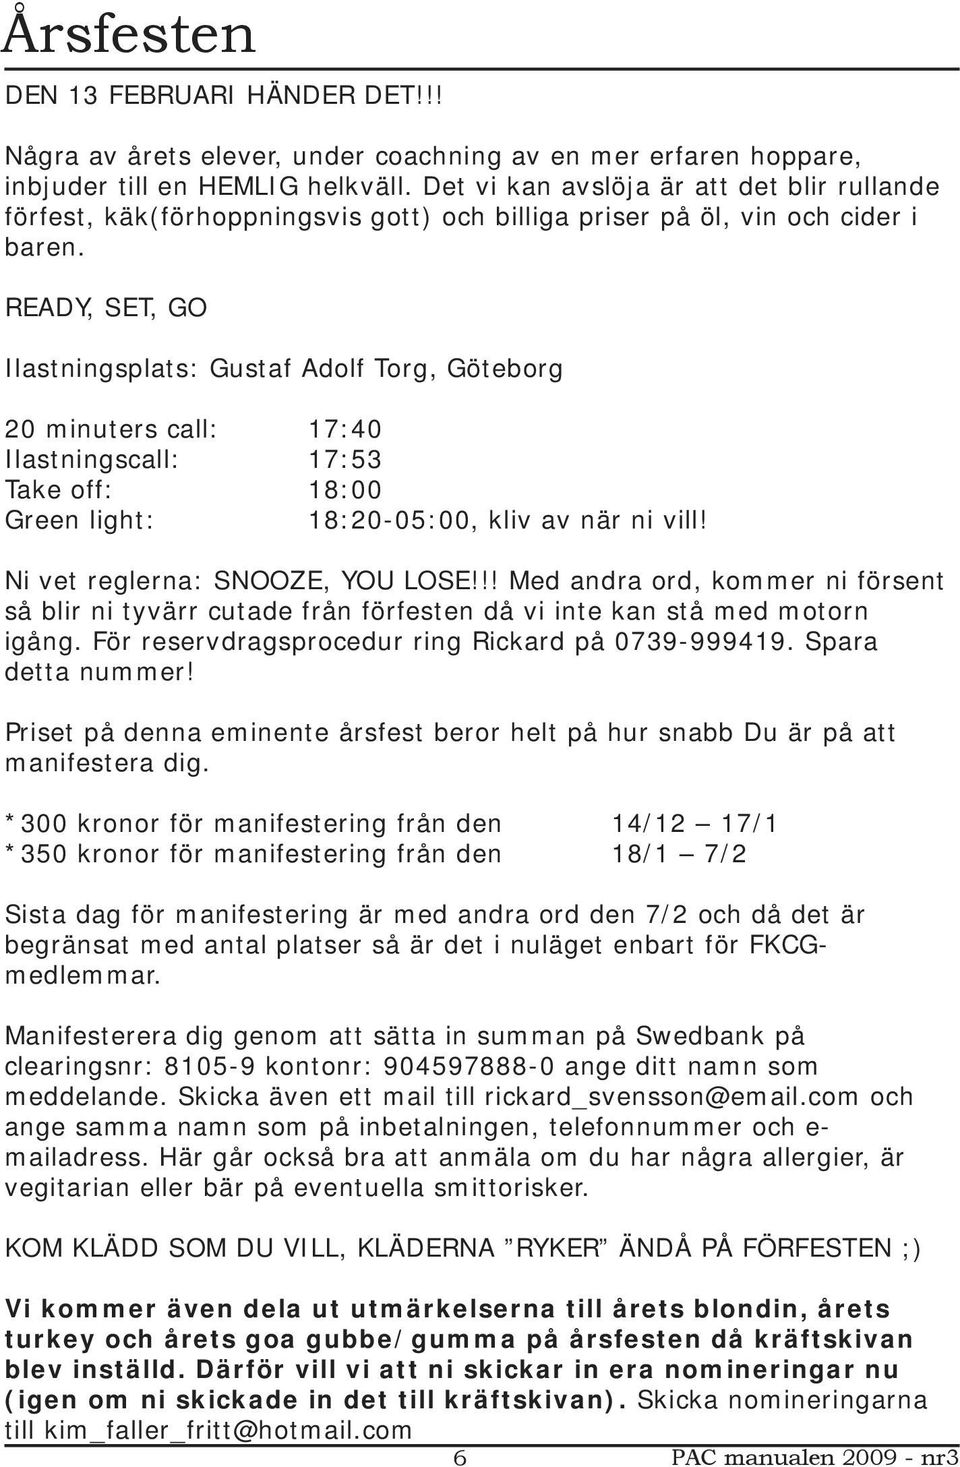 READY, SET, GO Ilastningsplats: Gustaf Adolf Torg, Göteborg 20 minuters call: Ilastningscall: Take off: Green light: 17:40 17:53 18:00 18:20-05:00, kliv av när ni vill!